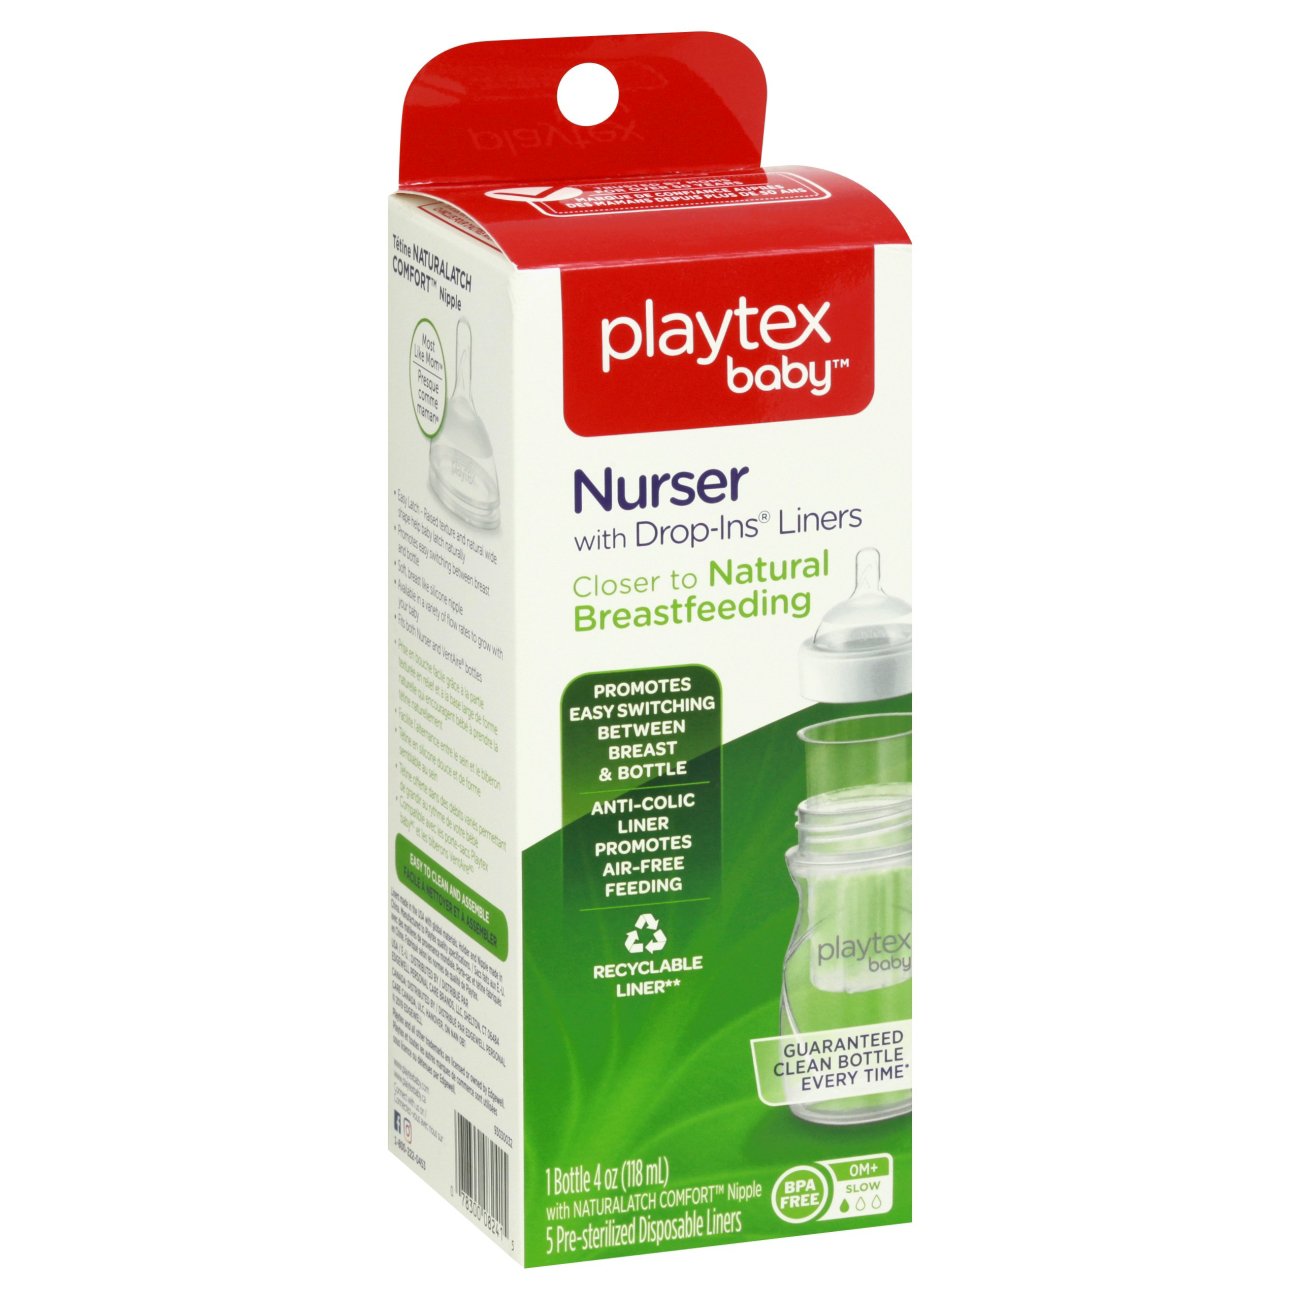 playtex 4 oz bottles